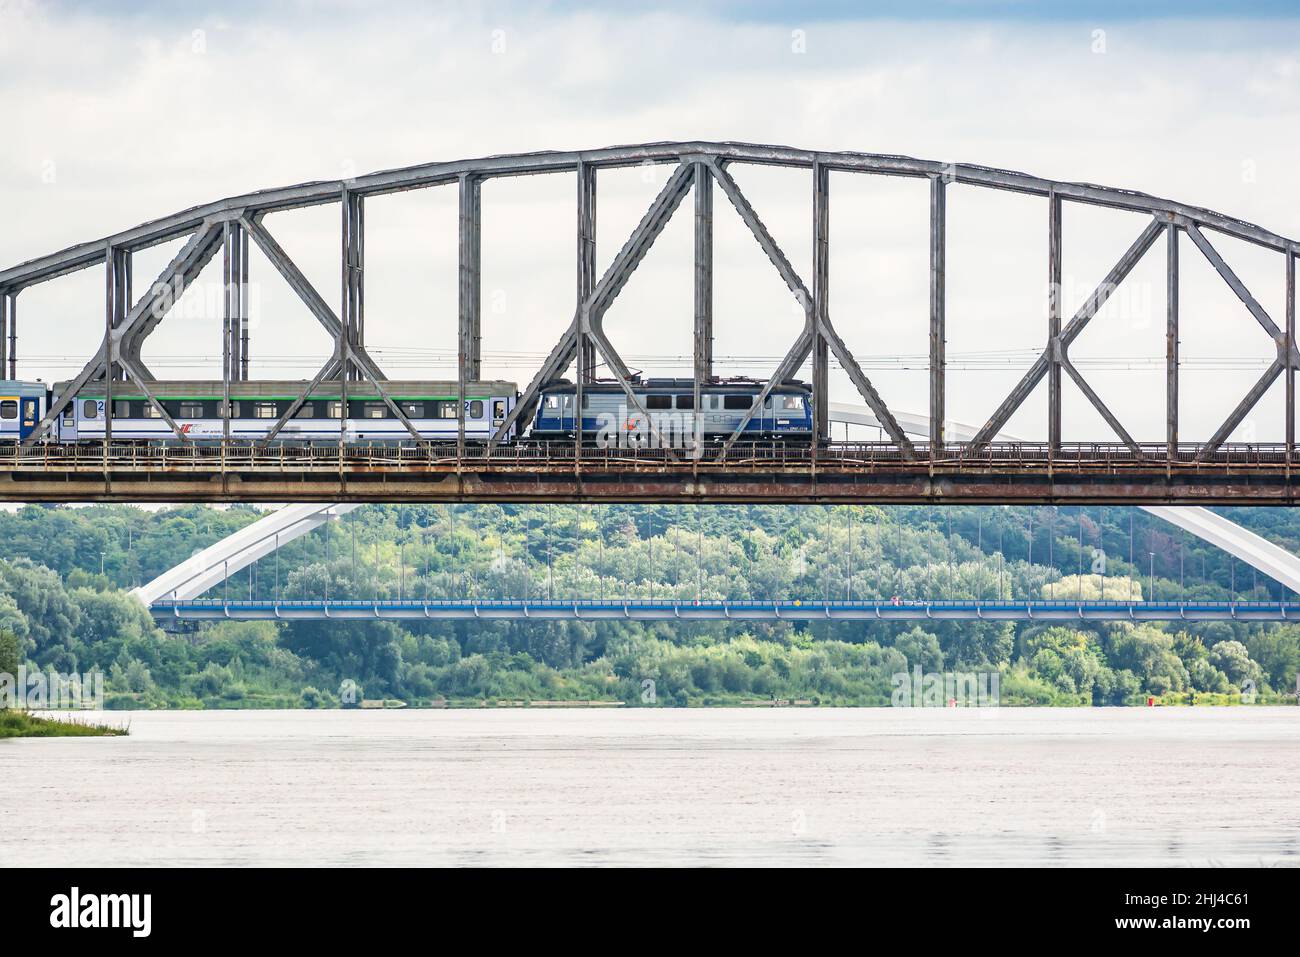 Torun, Poland - August 11, 2021. Ernest Malinowski Railway Bridge - Most kolejowy im. Ernesta Malinowskiego - in Summer Stock Photo